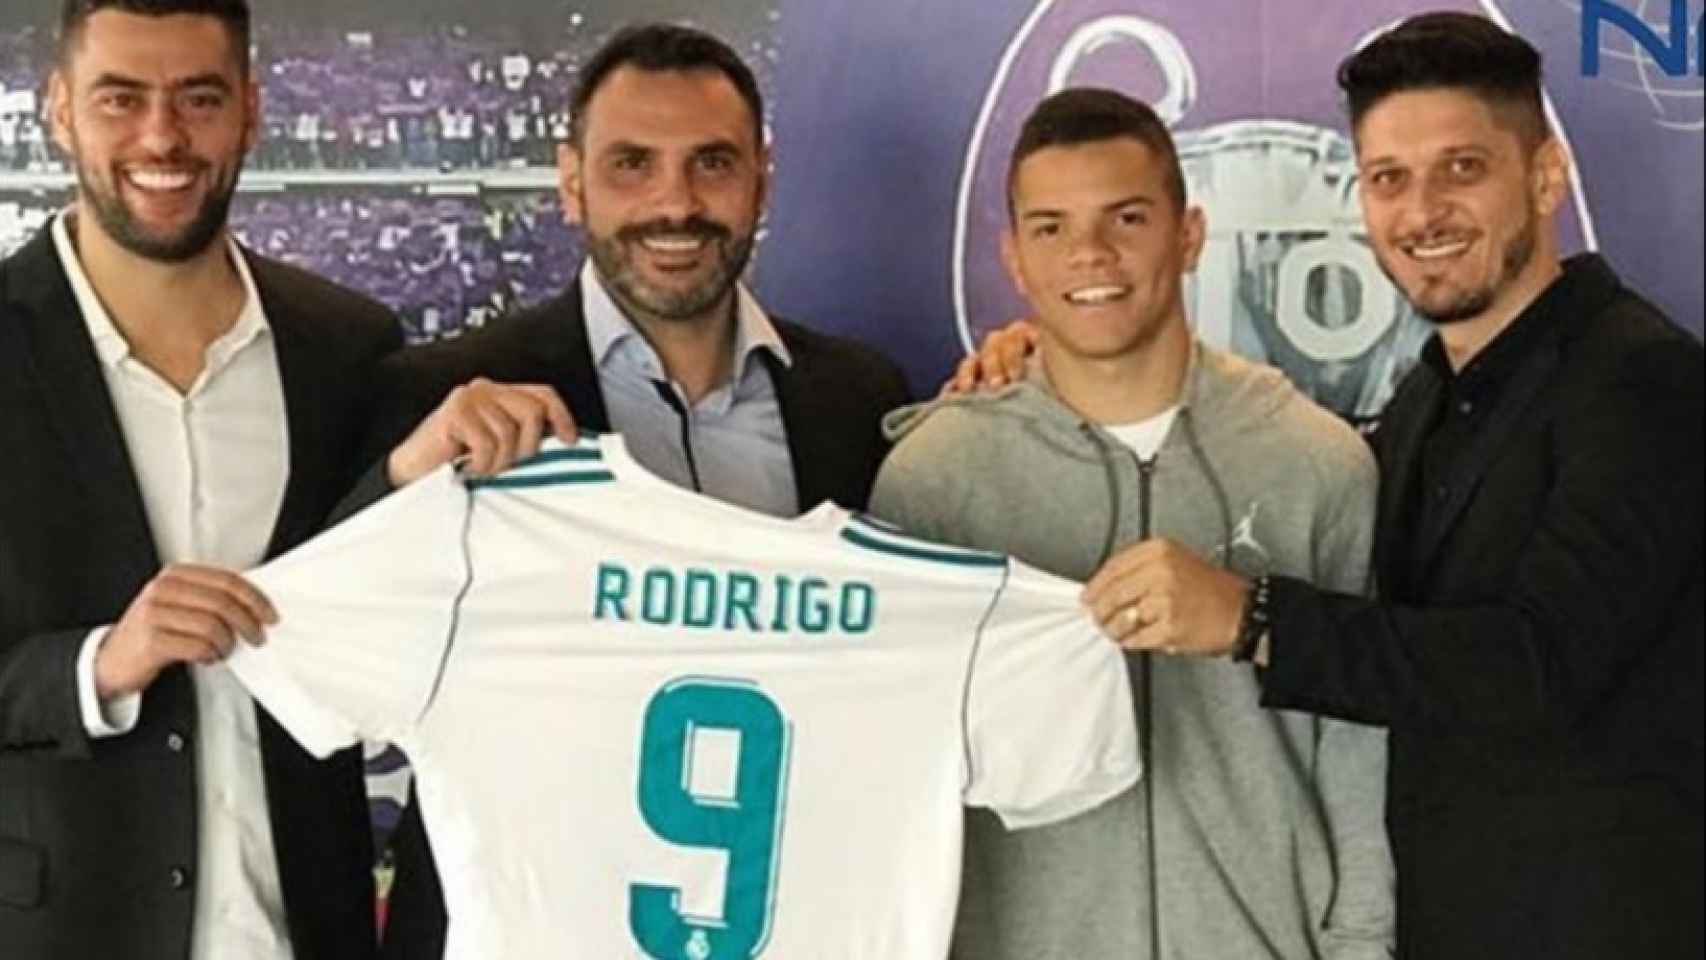 Rodrigo Rodrigues ficha por el Madrid y posa con la camiseta. Foto: ngsoccer.com